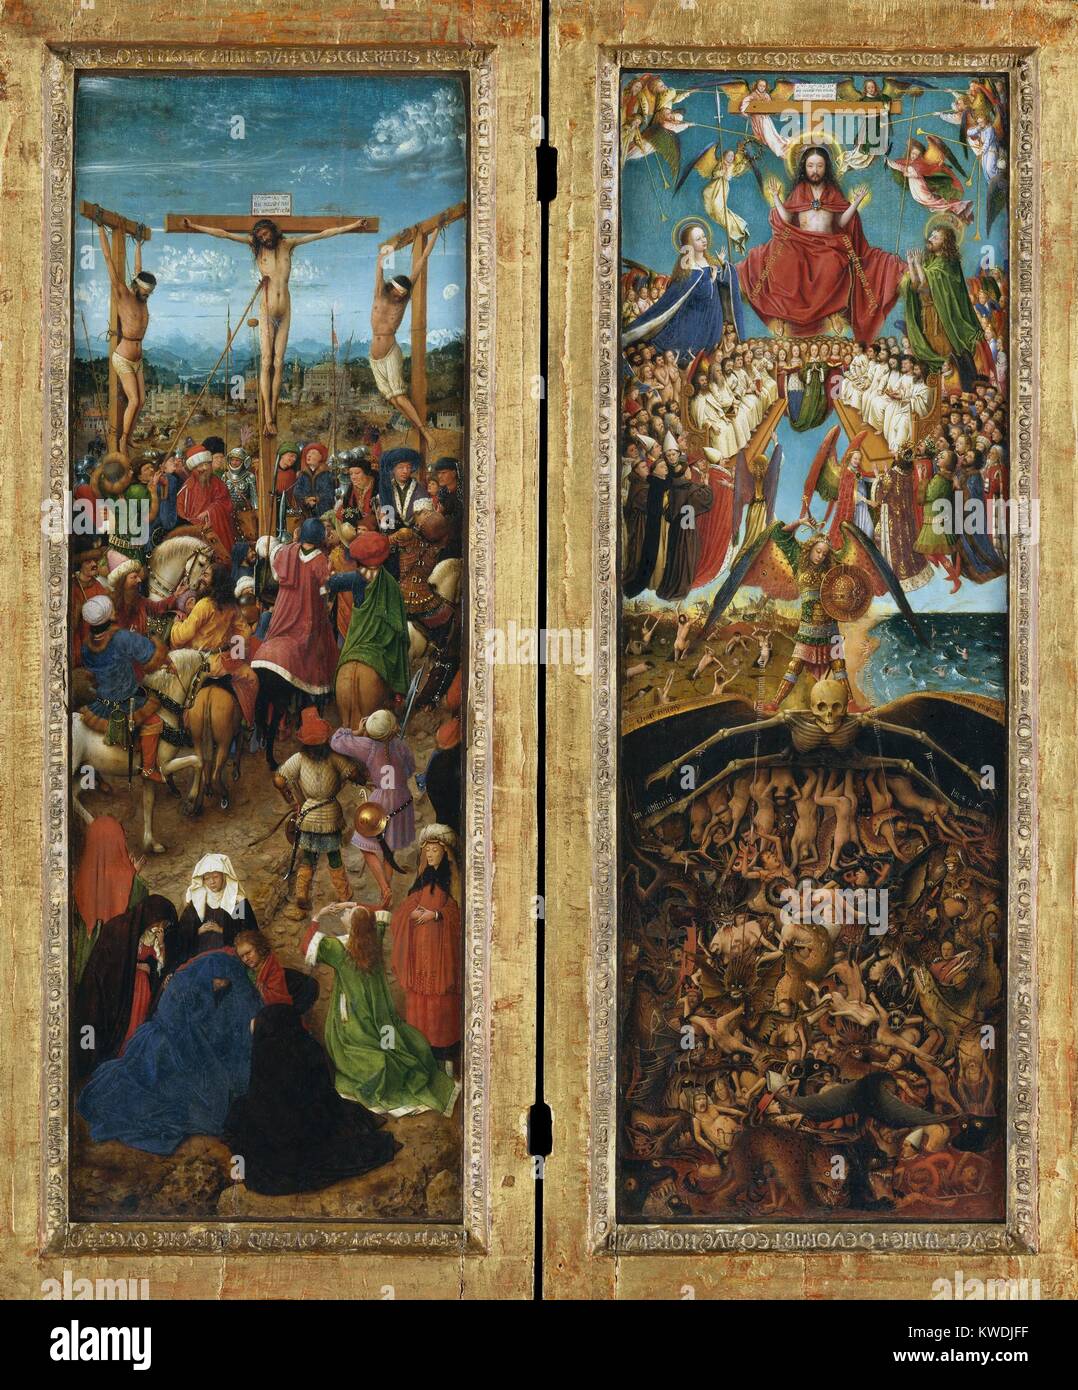 La crucifixion, le jugement dernier, par Jan van Eyck, 1440-41, la peinture de la Renaissance du Nord. Dans ce chef-d'œuvre de l'art de la Renaissance, le naturalisme d'un paysage a remplacé la masse d'or de la peinture italienne. Dans le panneau de gauche, Van Eyck décrit la Crucifixion qu'il aurait lieu à son contemporain 15e siècle monde (BSLOC   2017 16 106) Banque D'Images